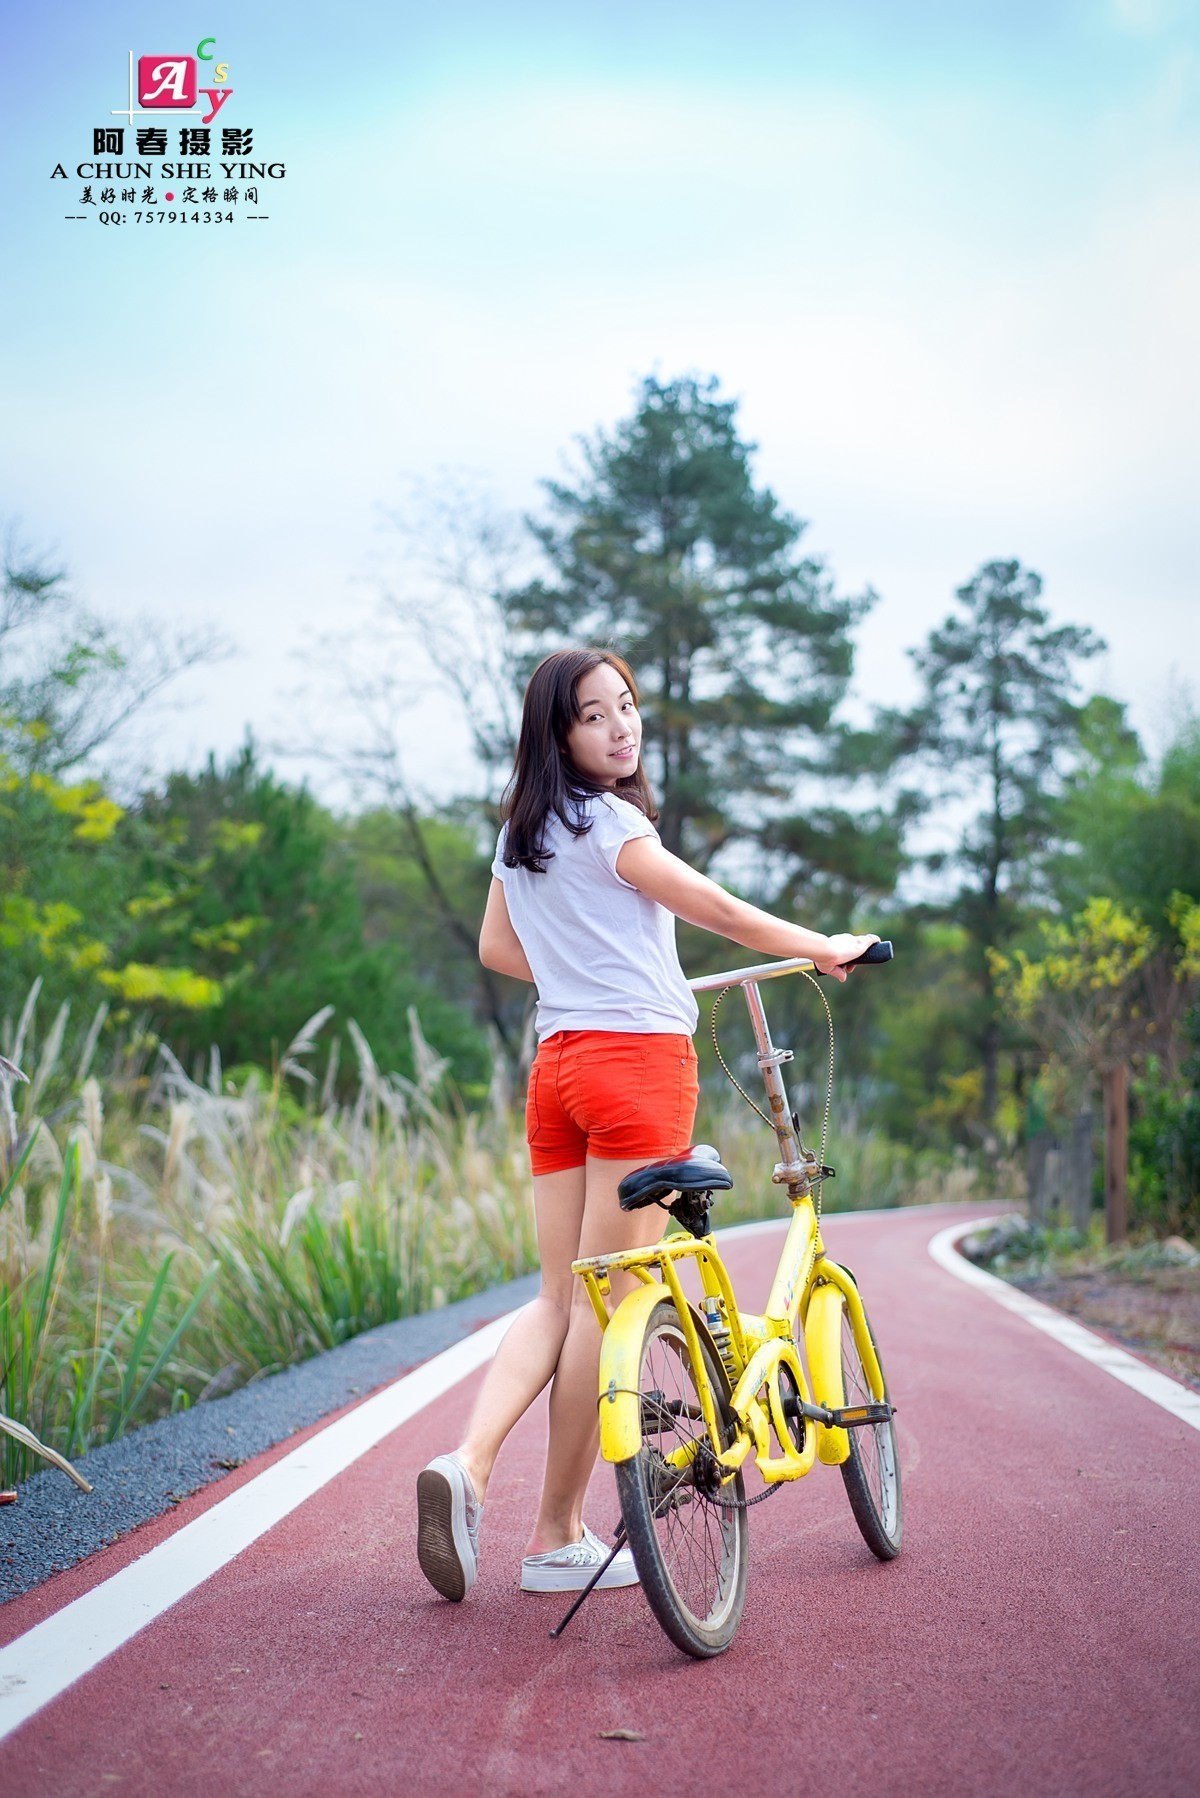 单车美女丨戴口罩也要骑车 青春活力无限爱笑小叶子|单车美女|SPECIALIZED闪电 - 美骑网|Biketo.com